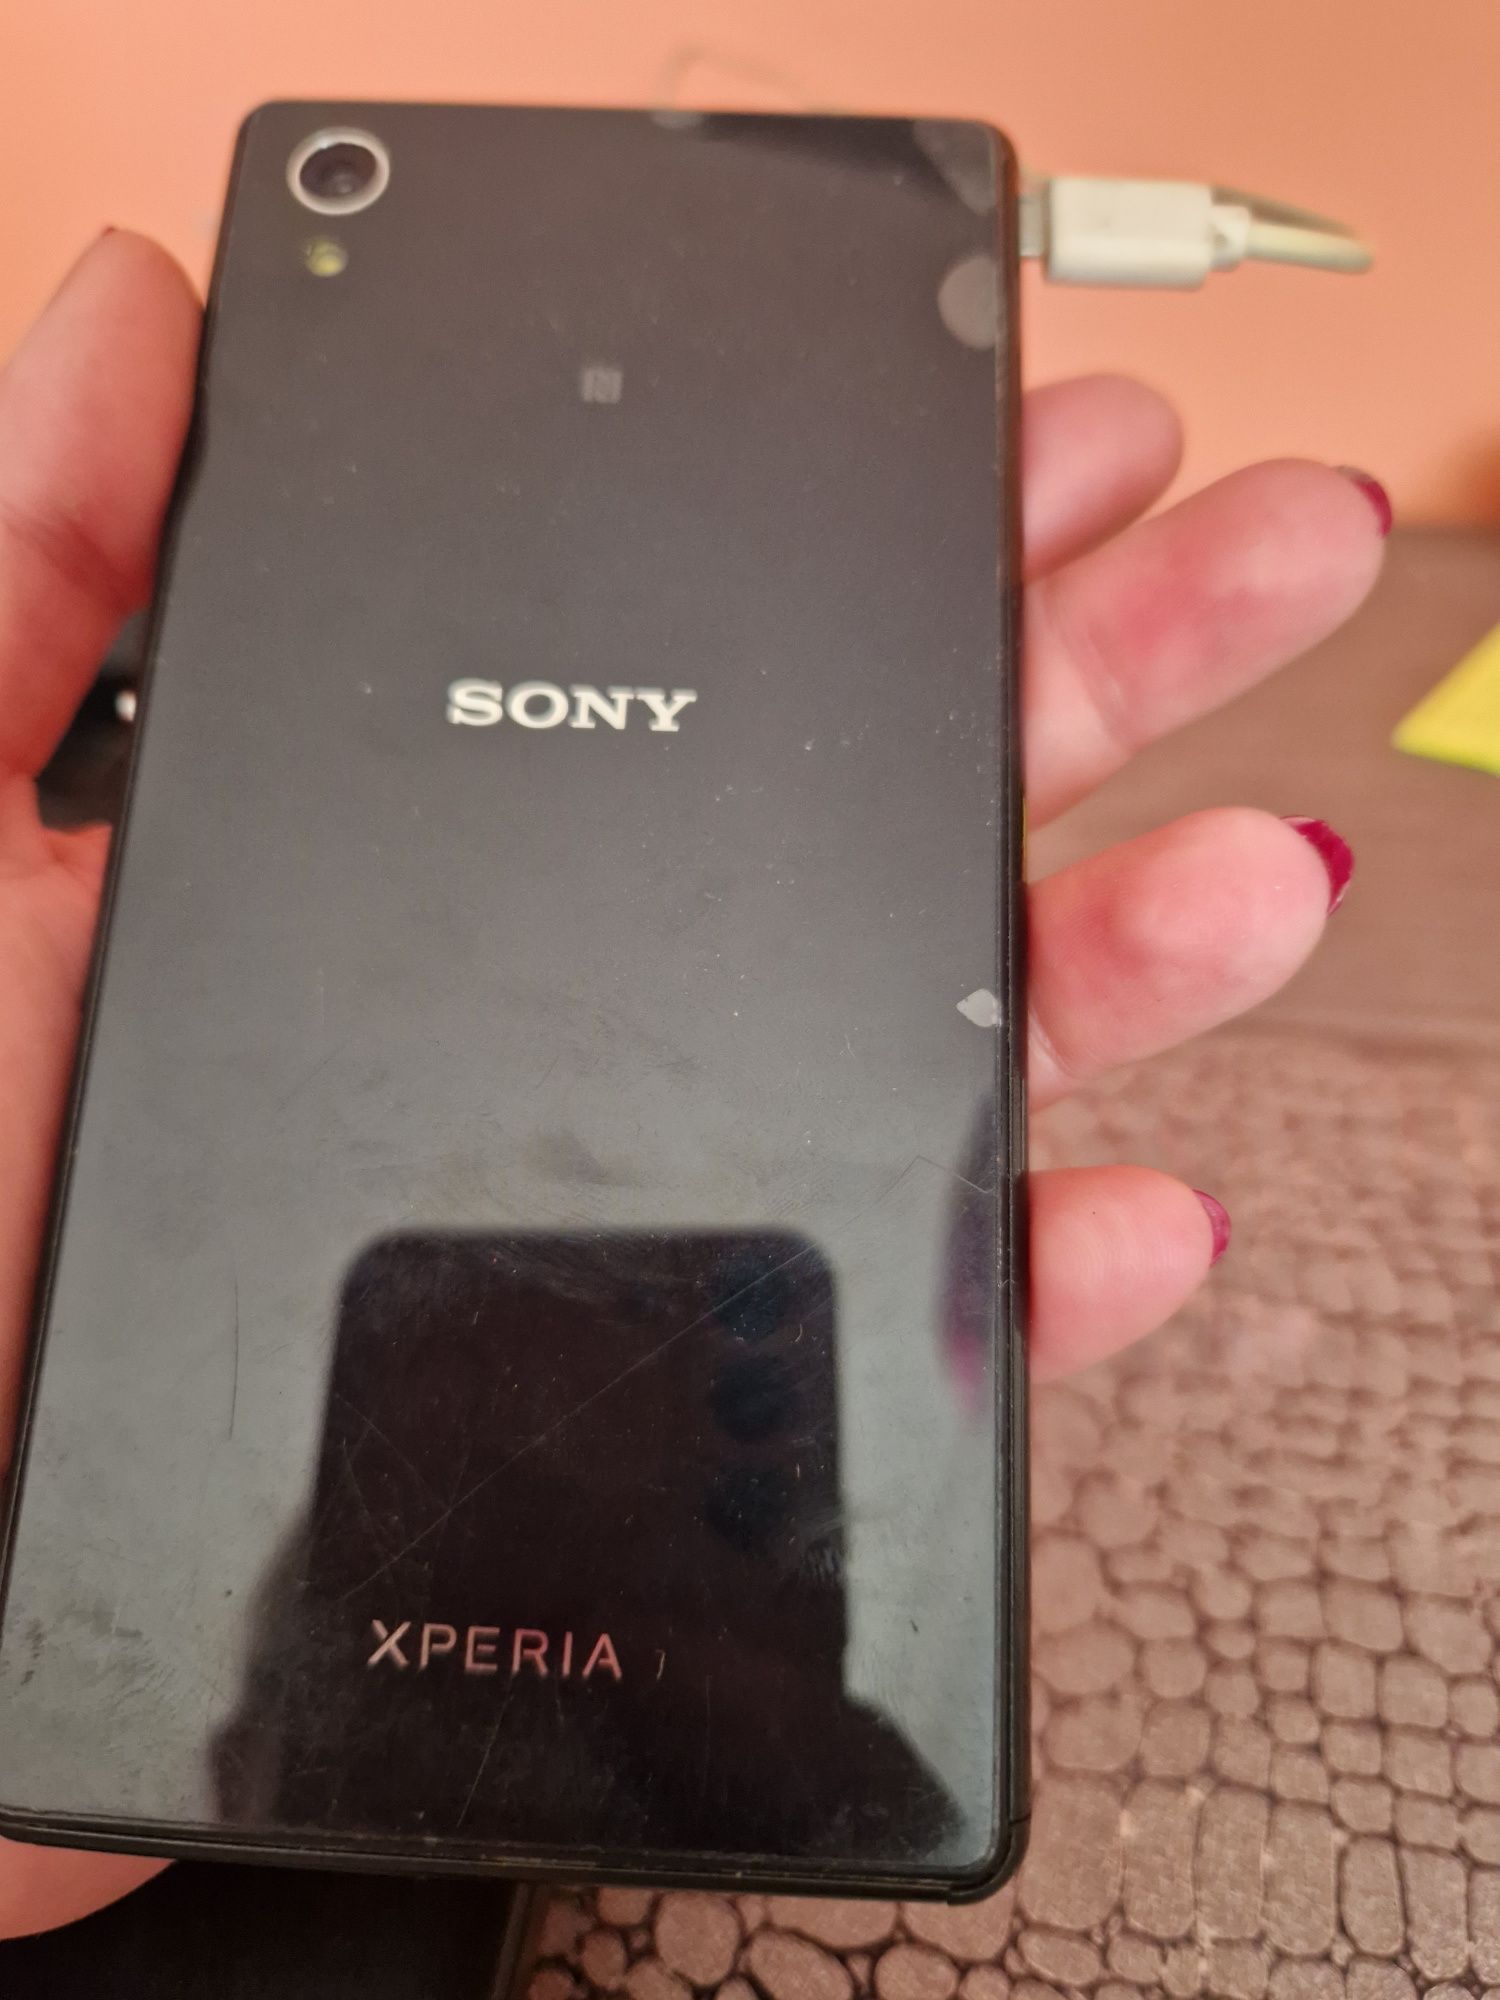 Sony Xperia E2303